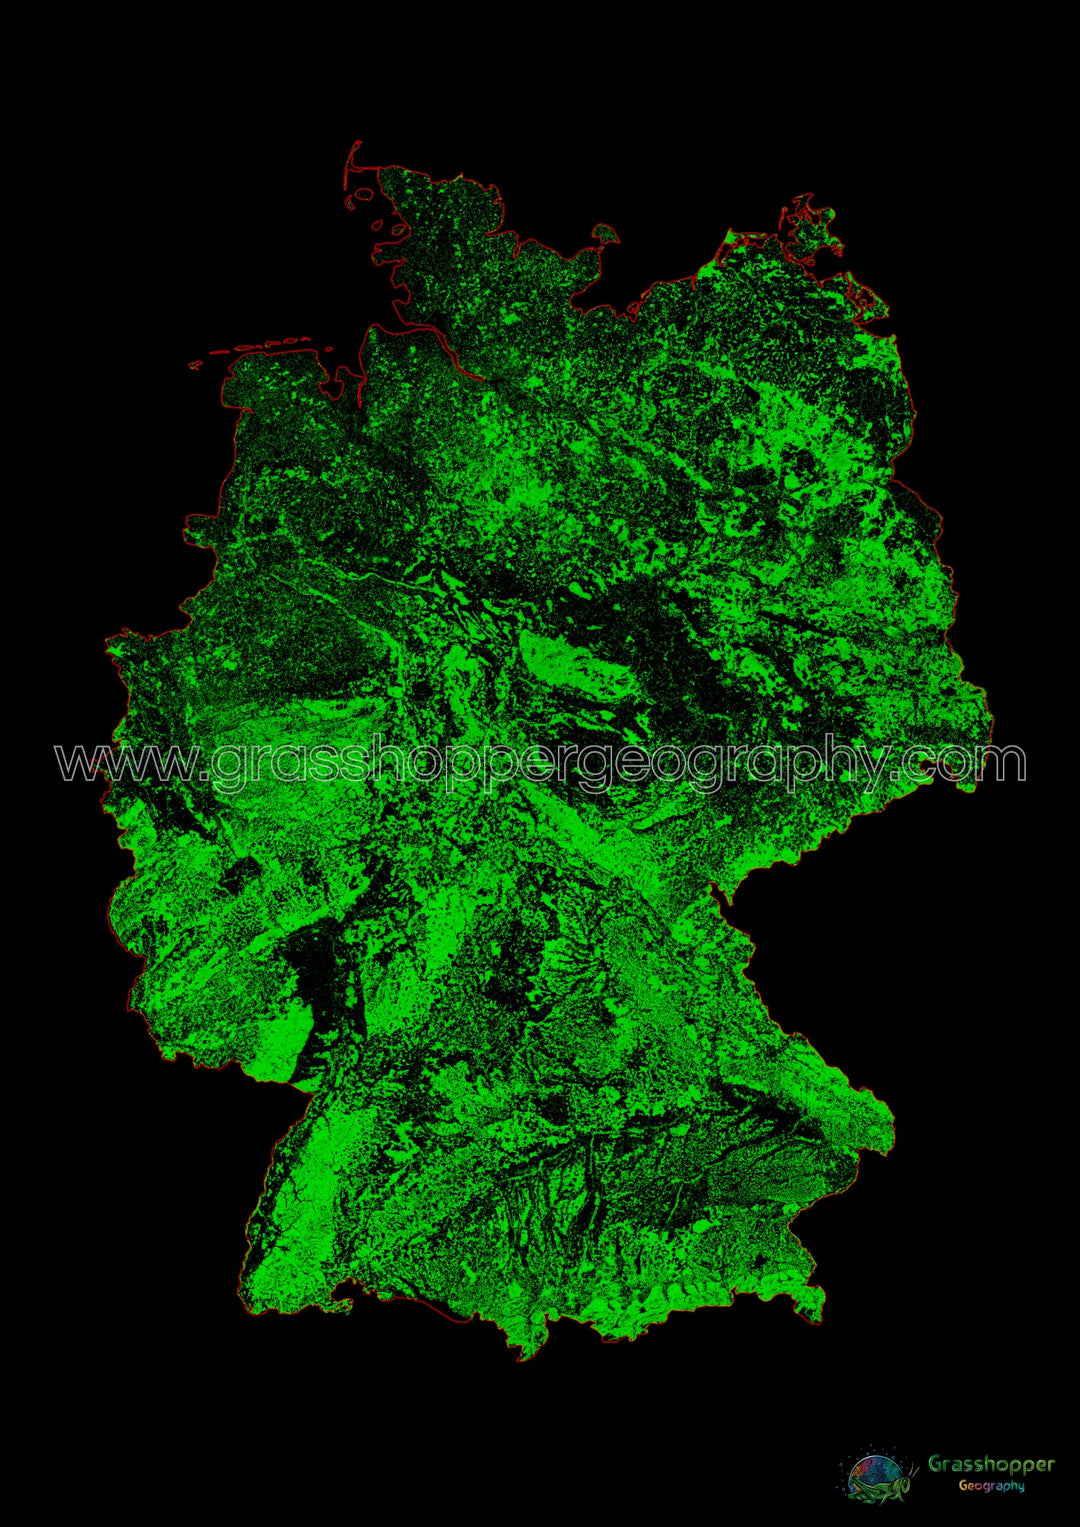 Alemania - Mapa de cobertura forestal - Impresión de bellas artes